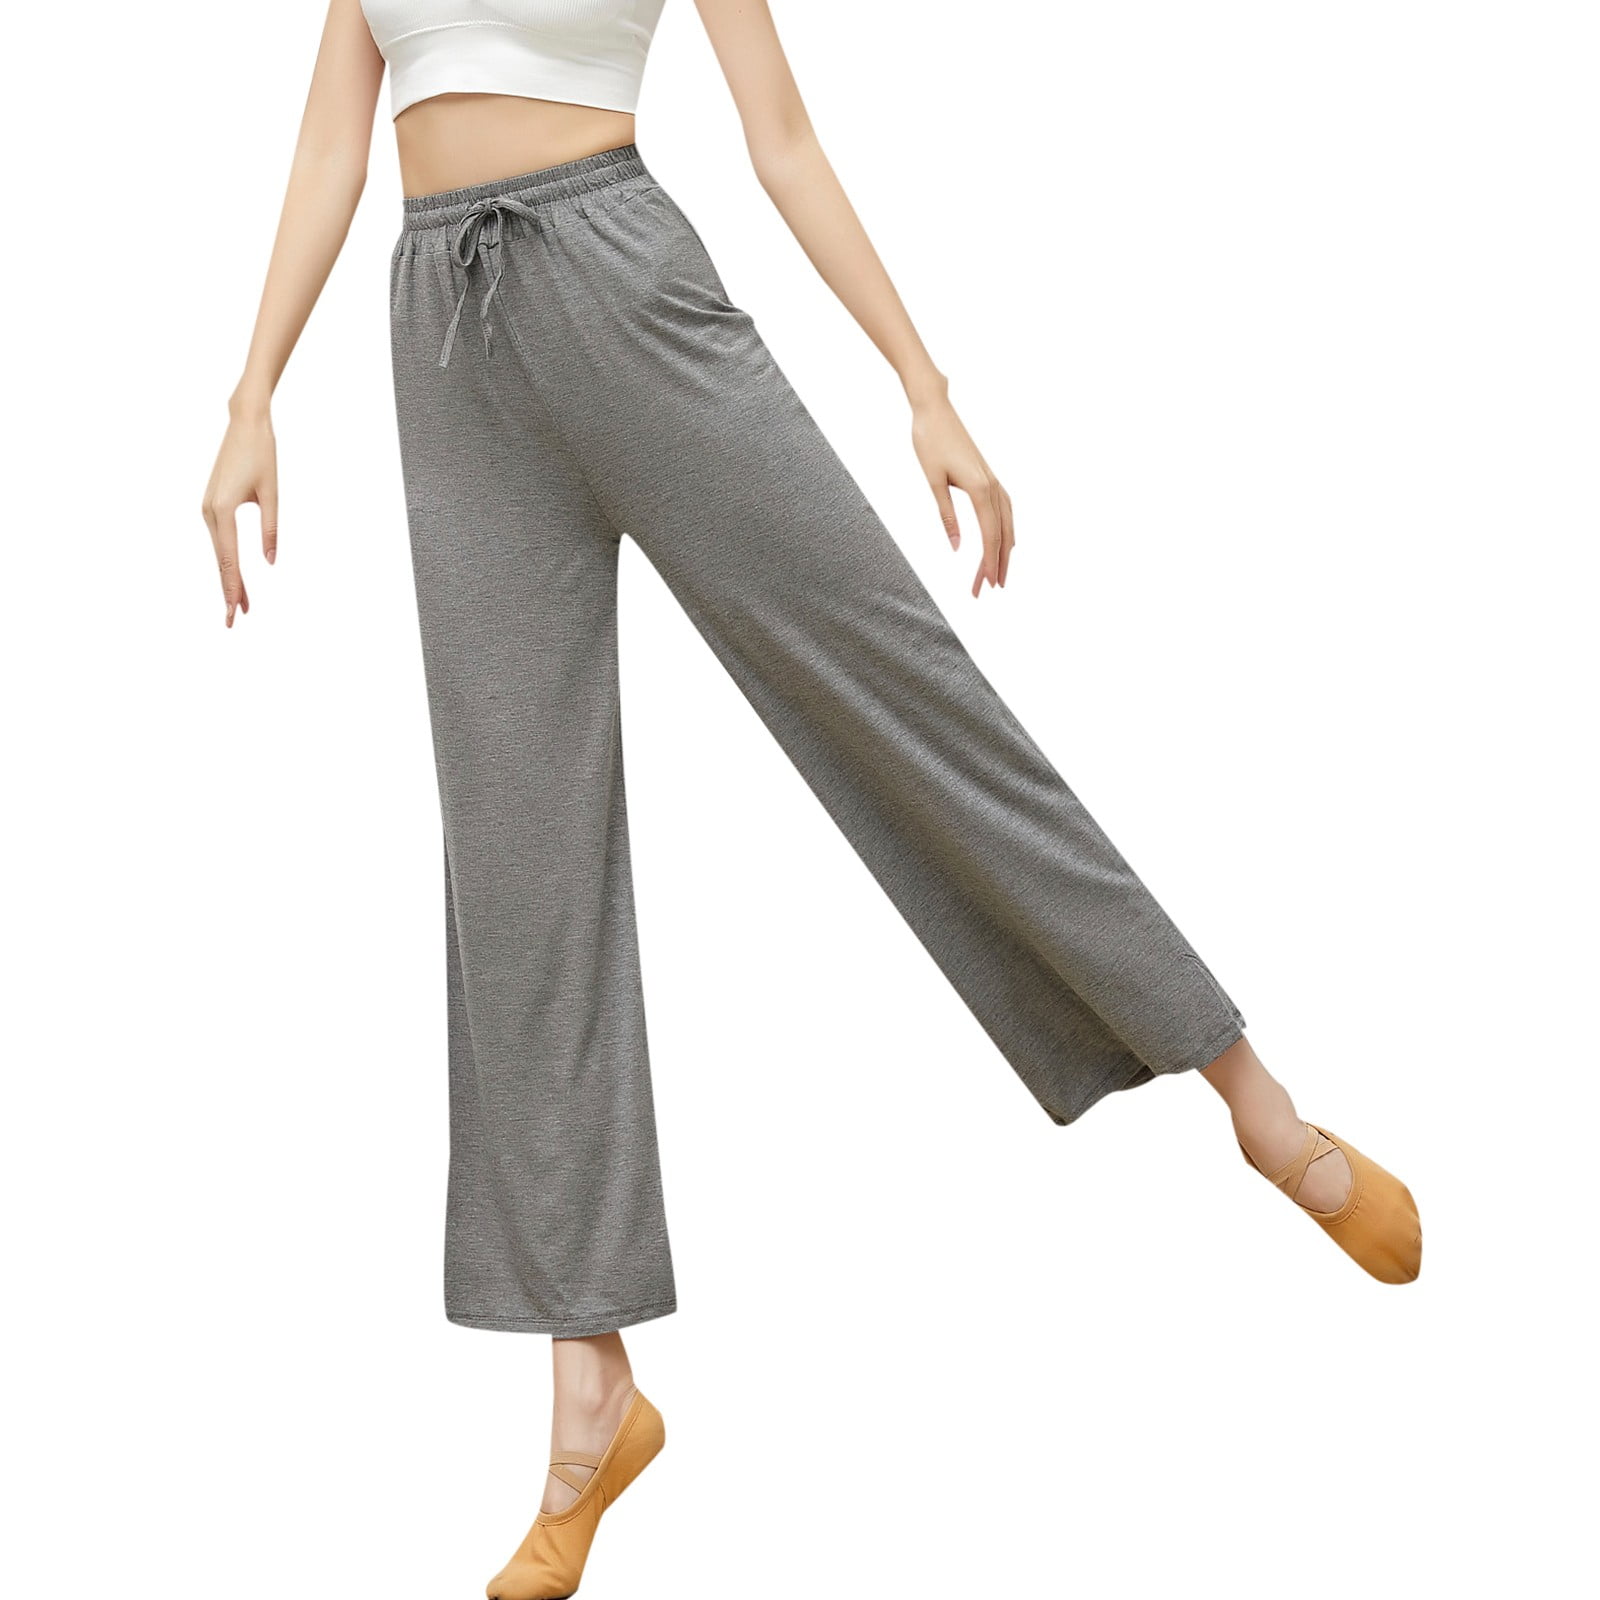 adviicd Yoga Pants For Women Dressy Yoga Pants For Women Women's Yoga pants  Ribbed Seamless Workout High Waist Leggings Hot Pink L